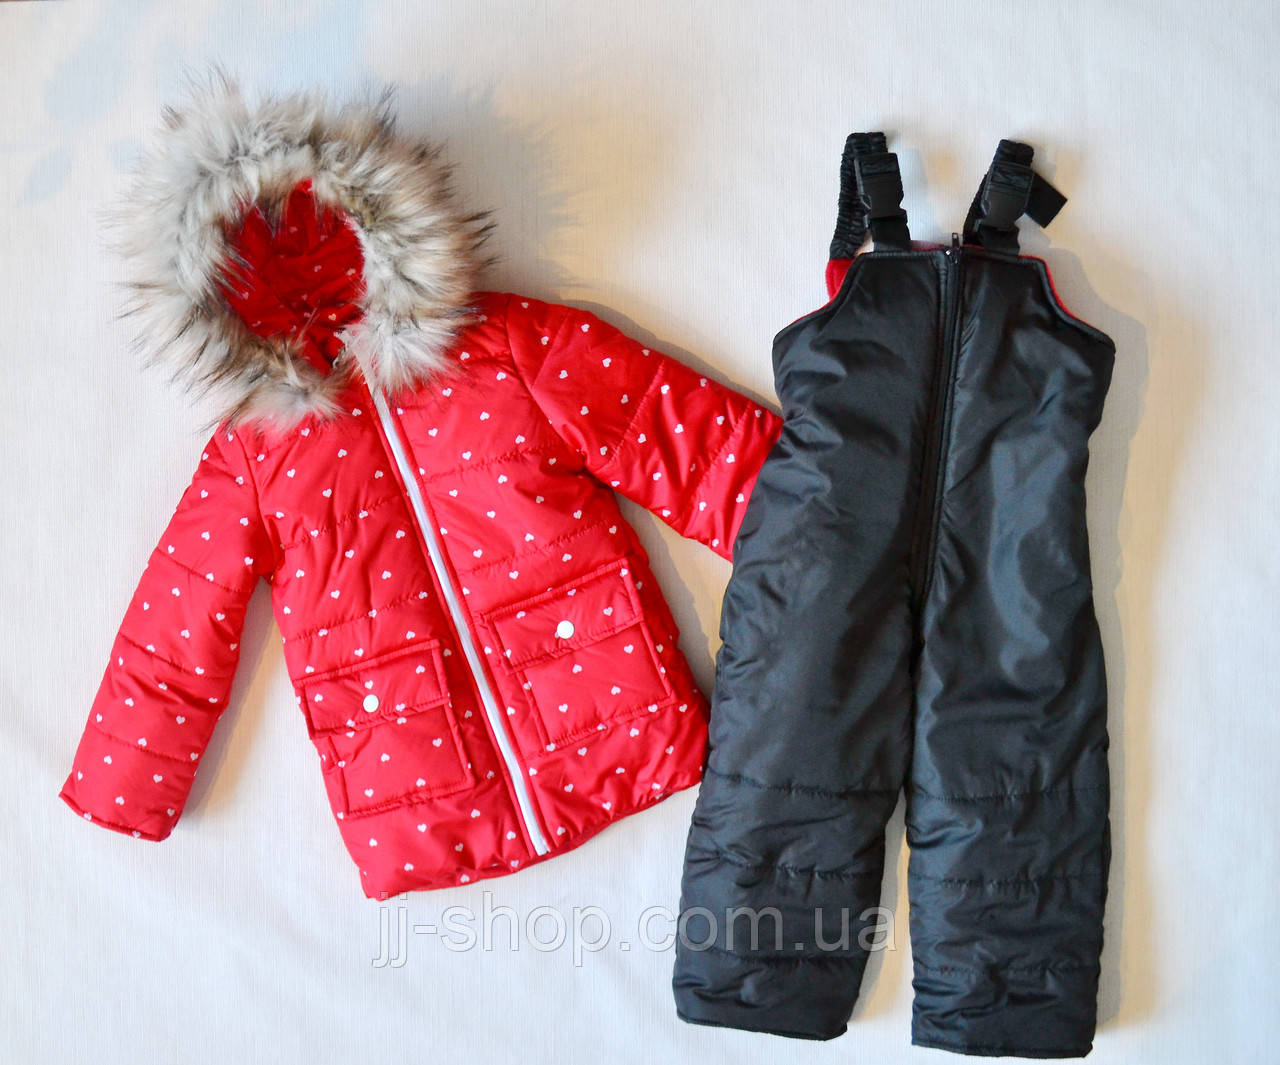 Дитячий зимовий комбінезон для дівчинки 92 розмір, червоного кольору